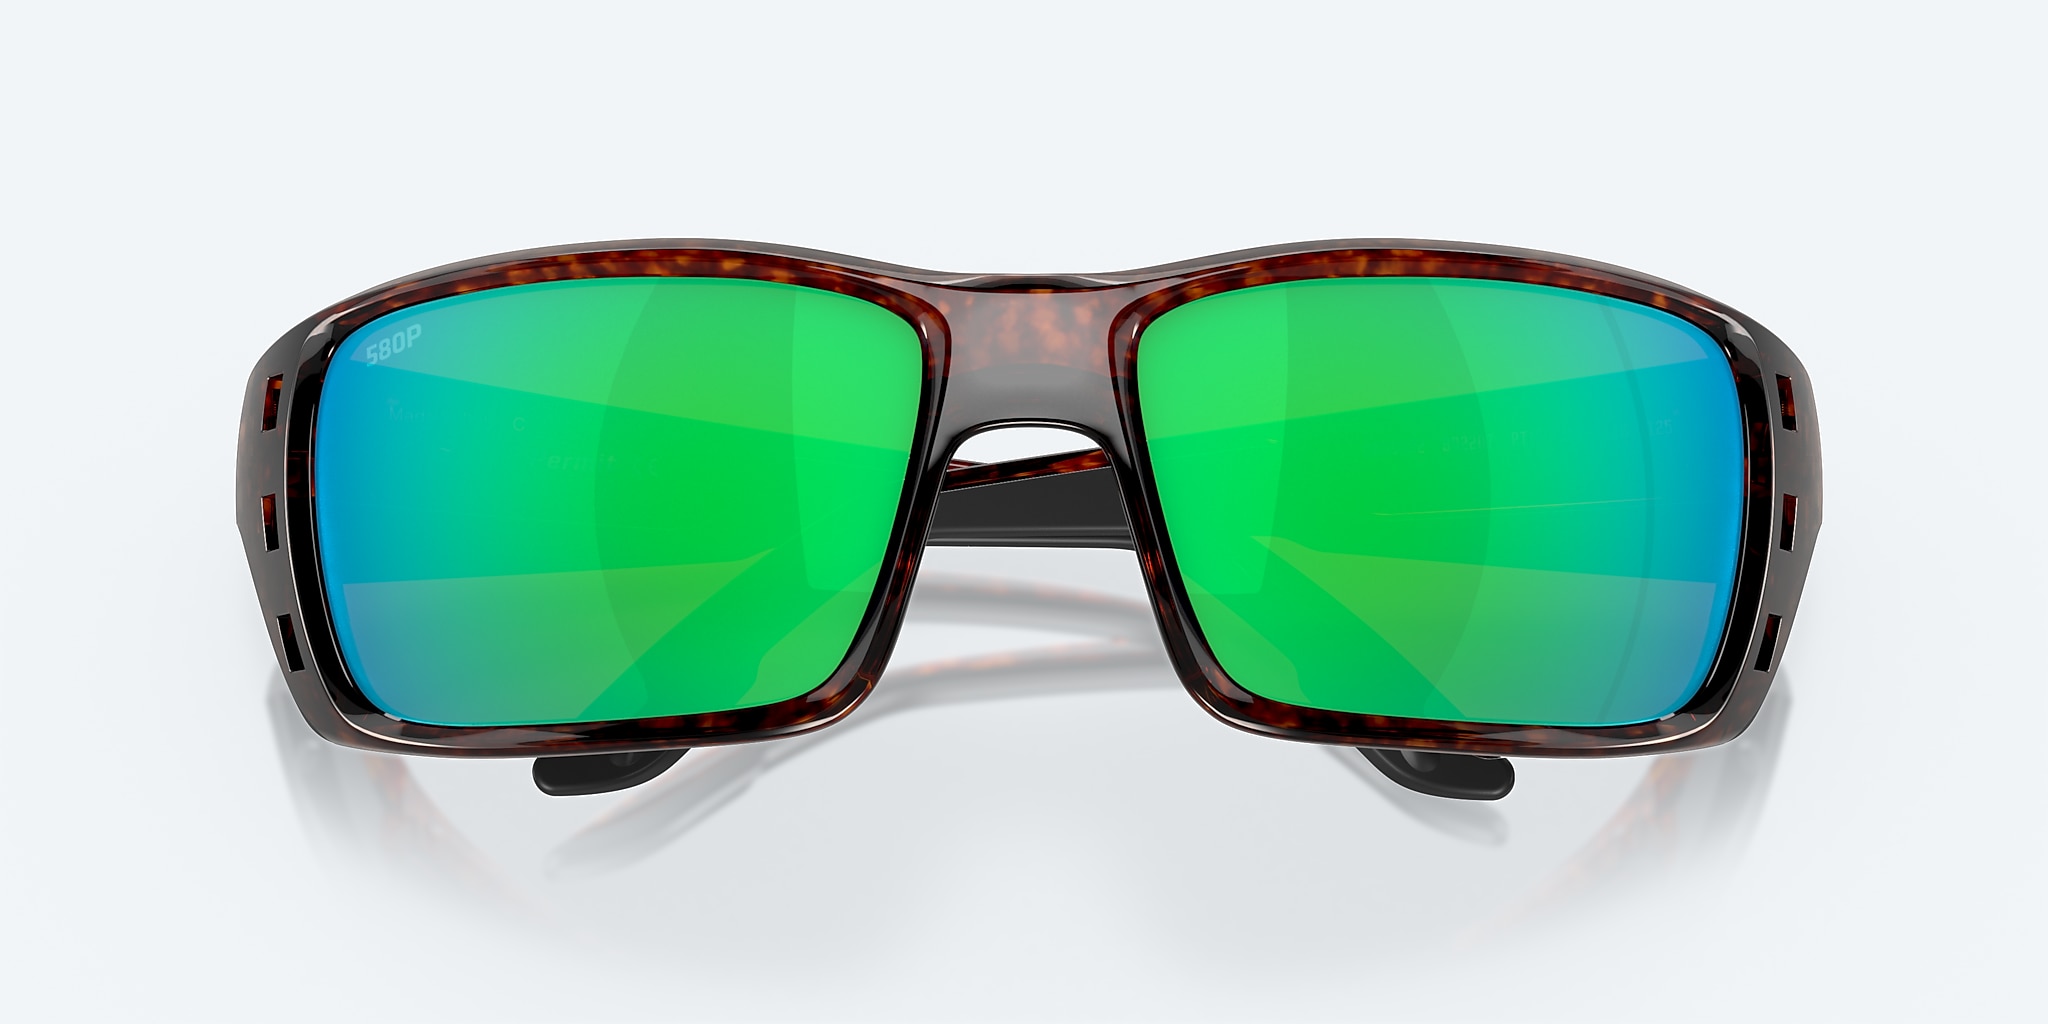 Costa Del Mar Permit Sunglasses - Tortoise / Green Mirror 580P